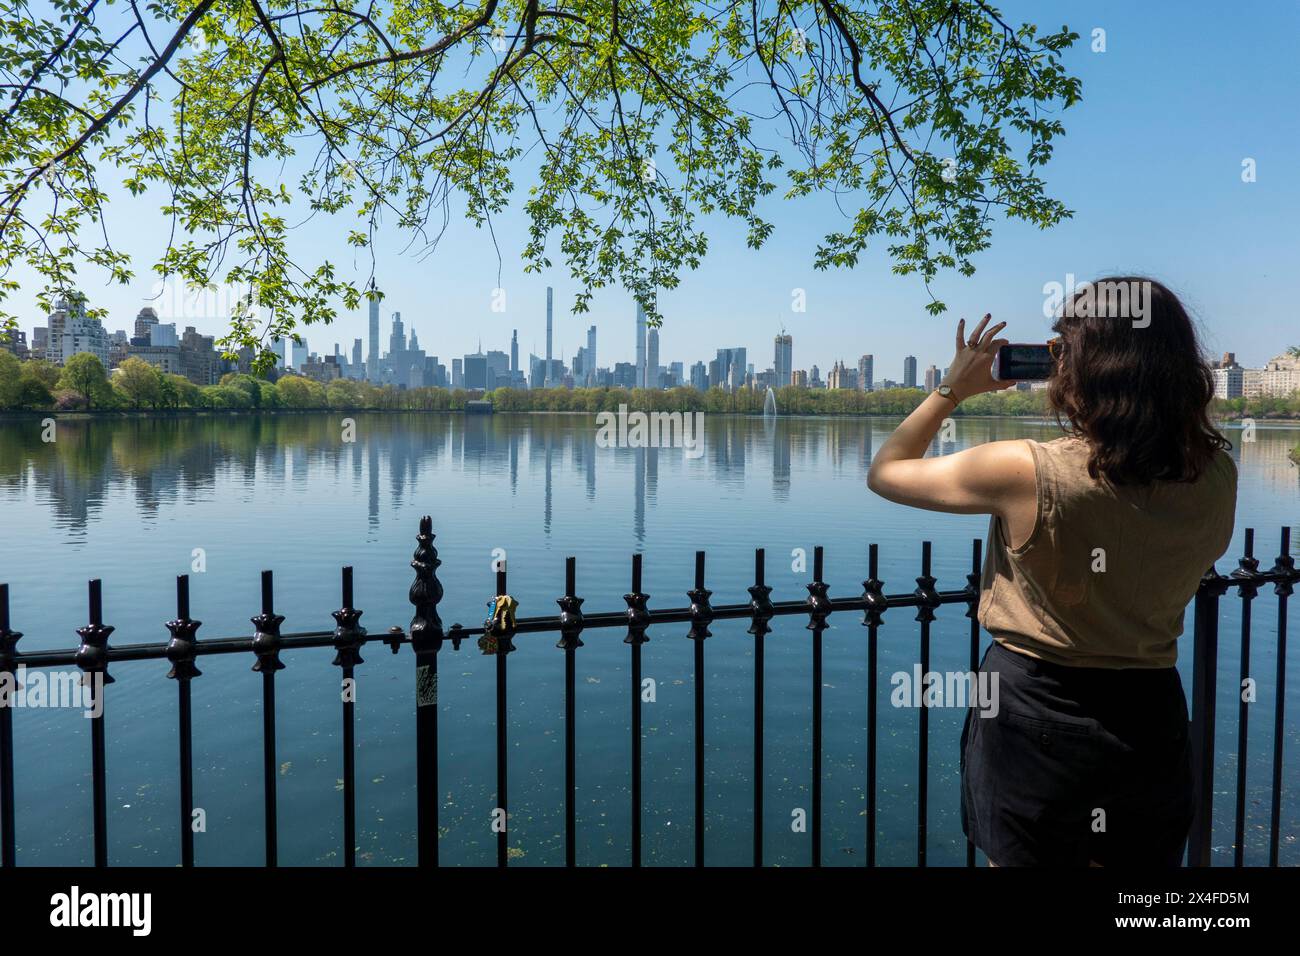 Femme photographiant la vue du réservoir de Central Park, New York City, USA Banque D'Images